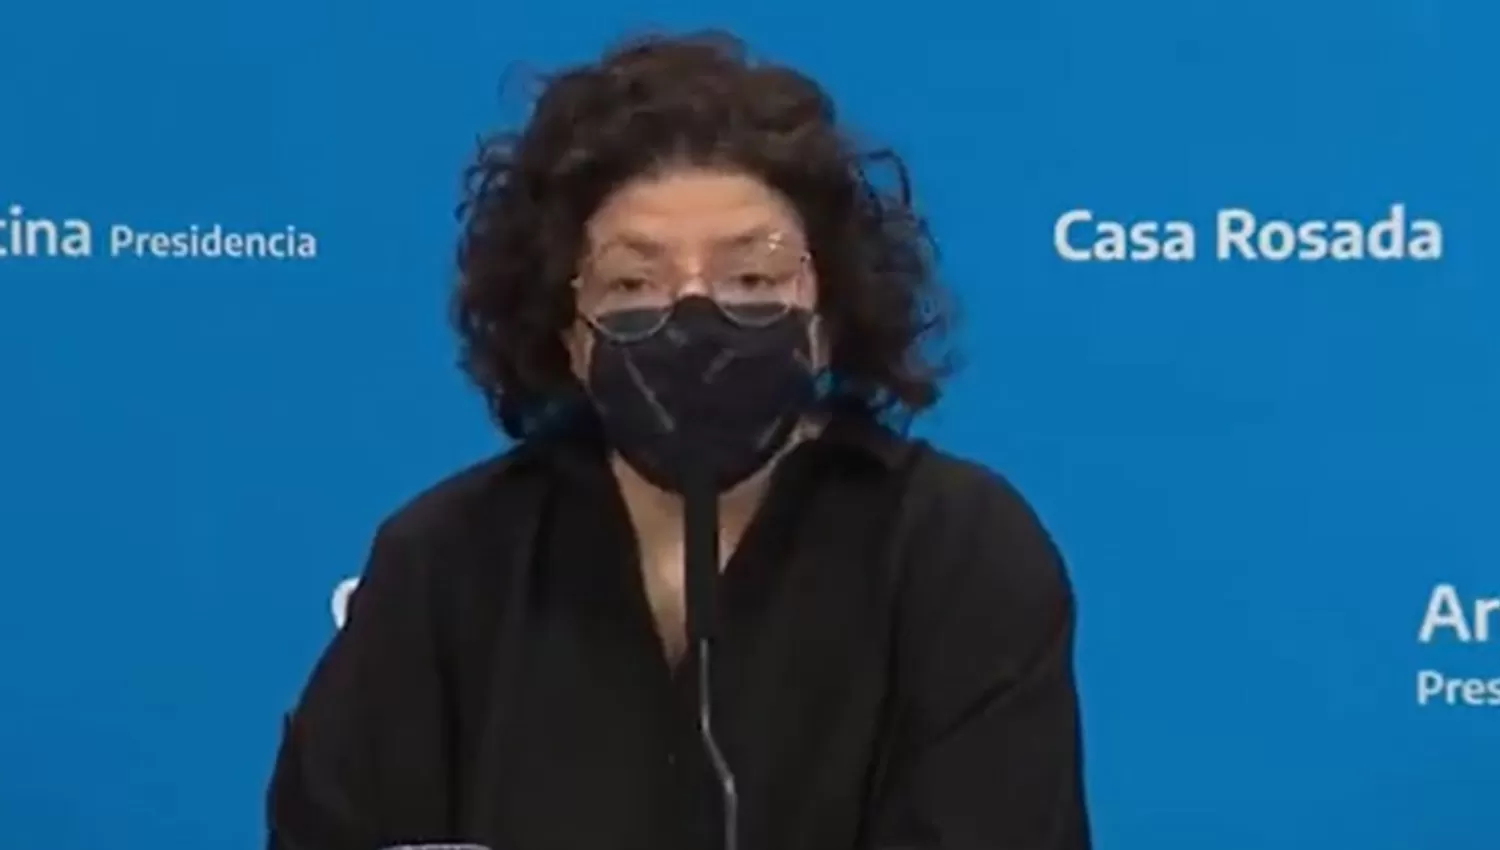 La ministra de Salud Carla Vizzotti.